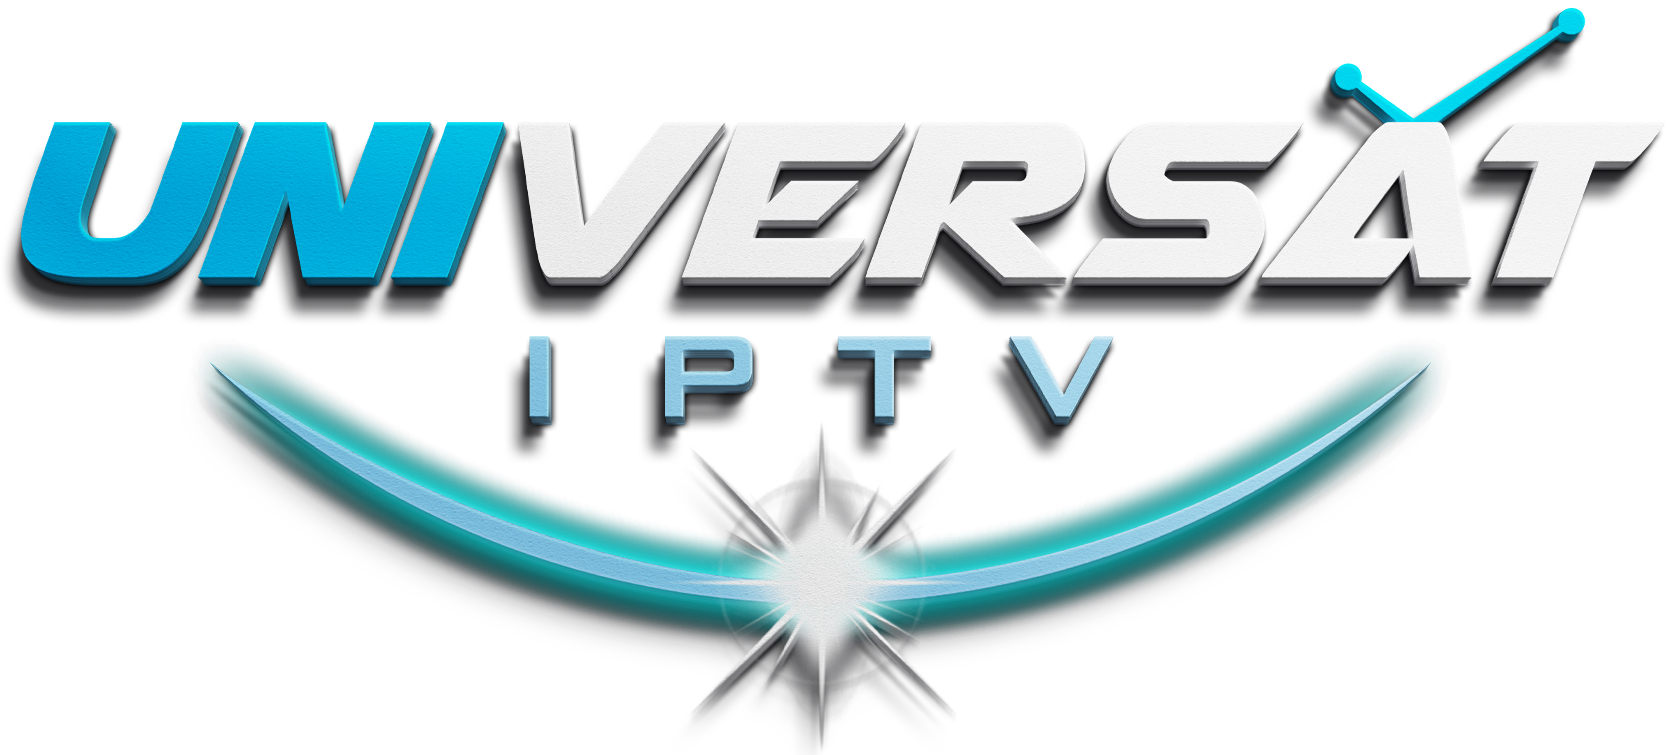 Universat IPTV – Best IPTV Services Provider